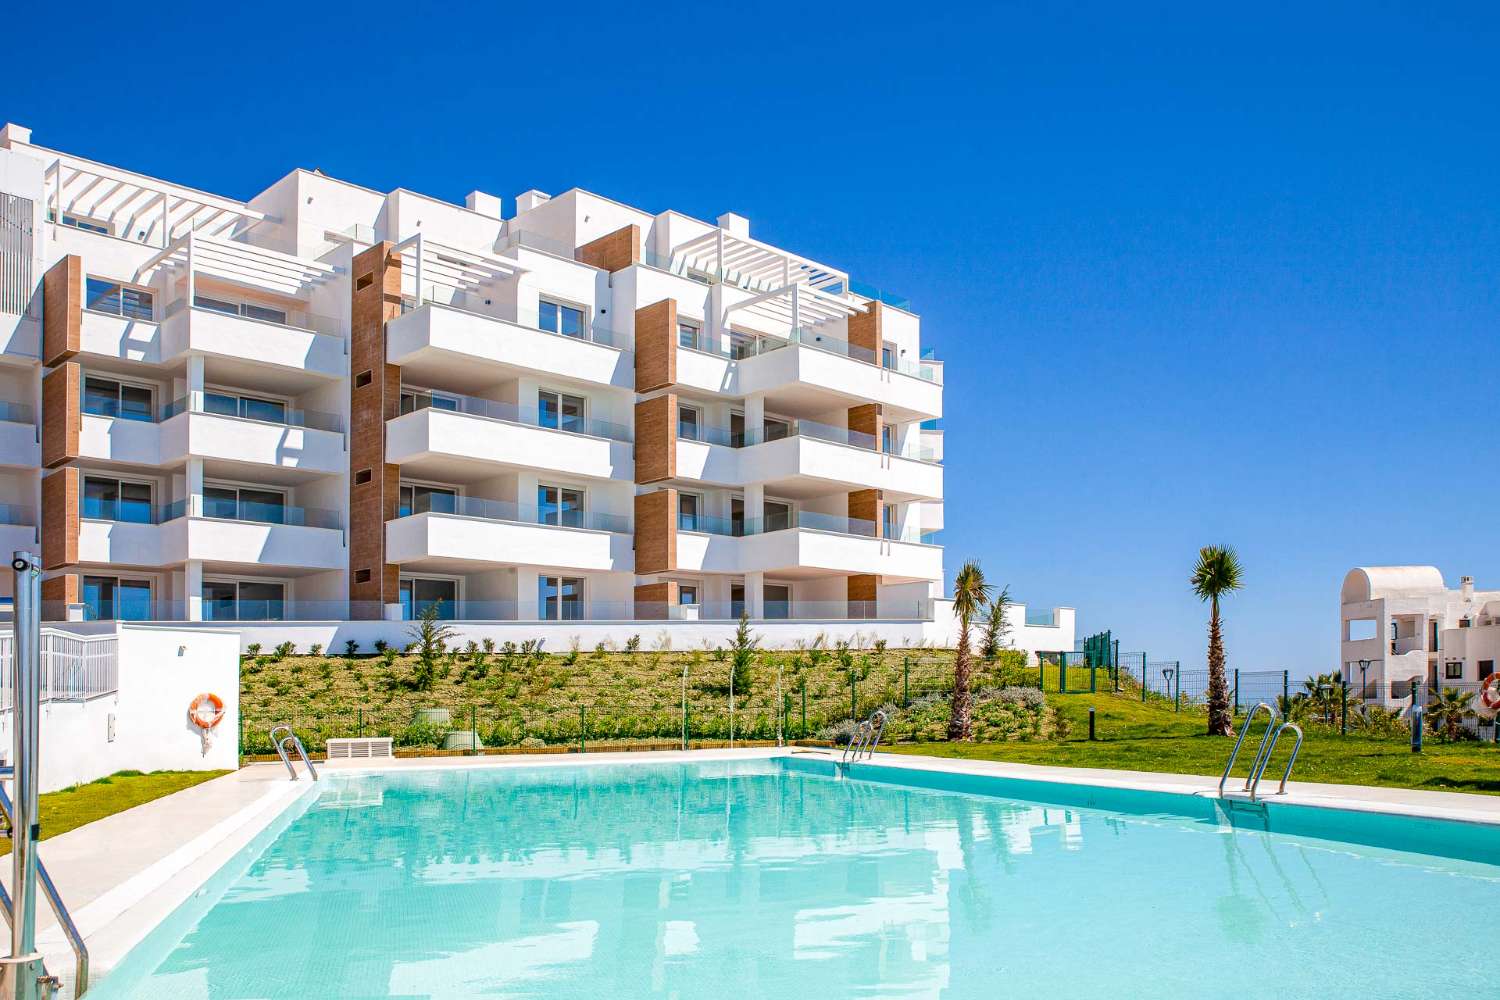 Apartamento en venta en torrox costa con bonitas vistas al mar, garaje y piscina comunitaria